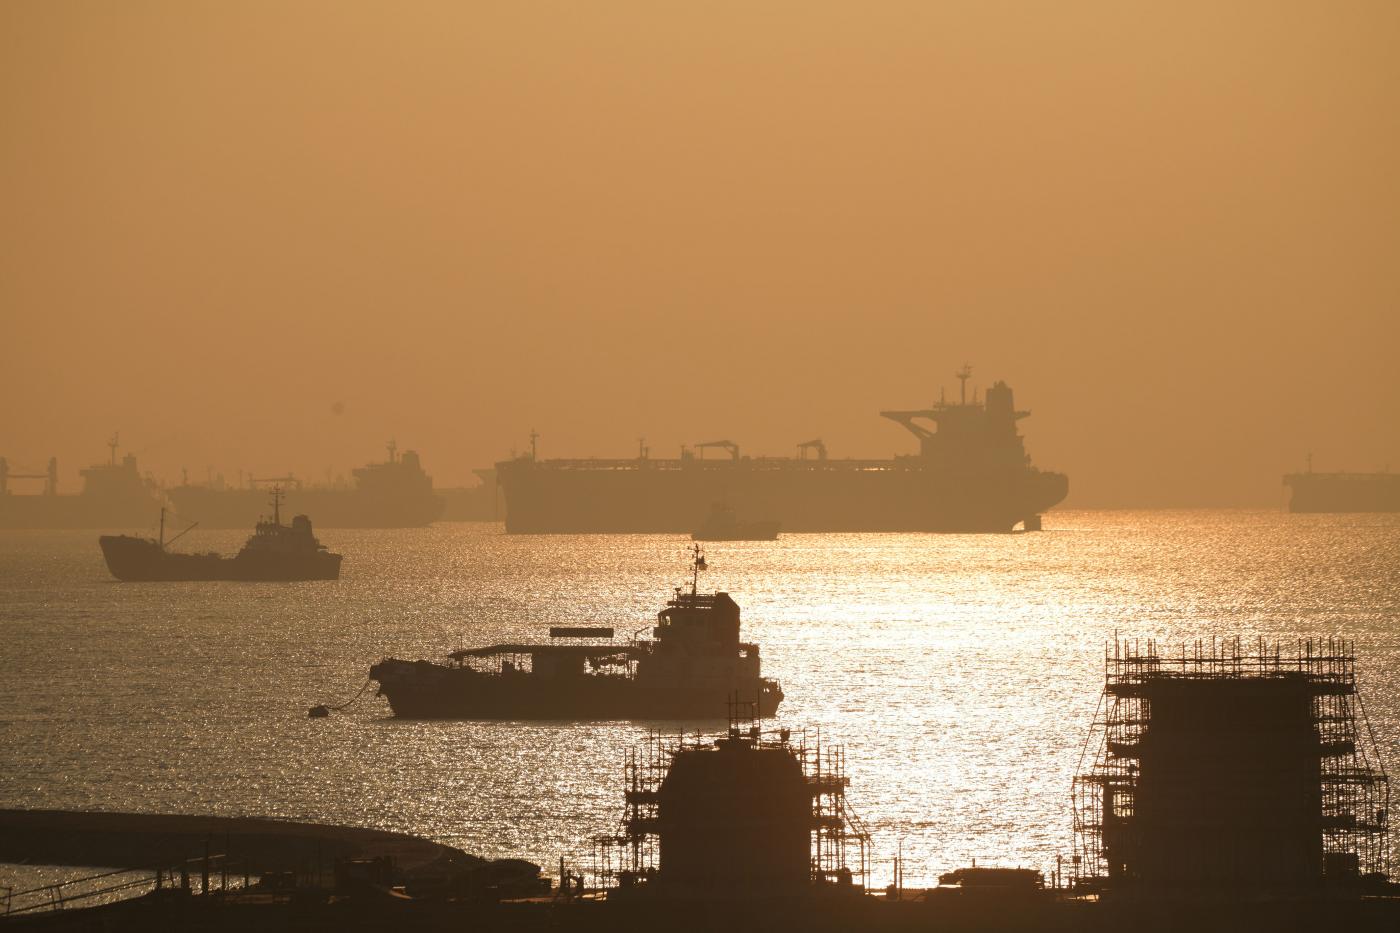 SINGAPORE-ECONOMY-NON OIL EXPORTS INCREASE by xinjiapo. 